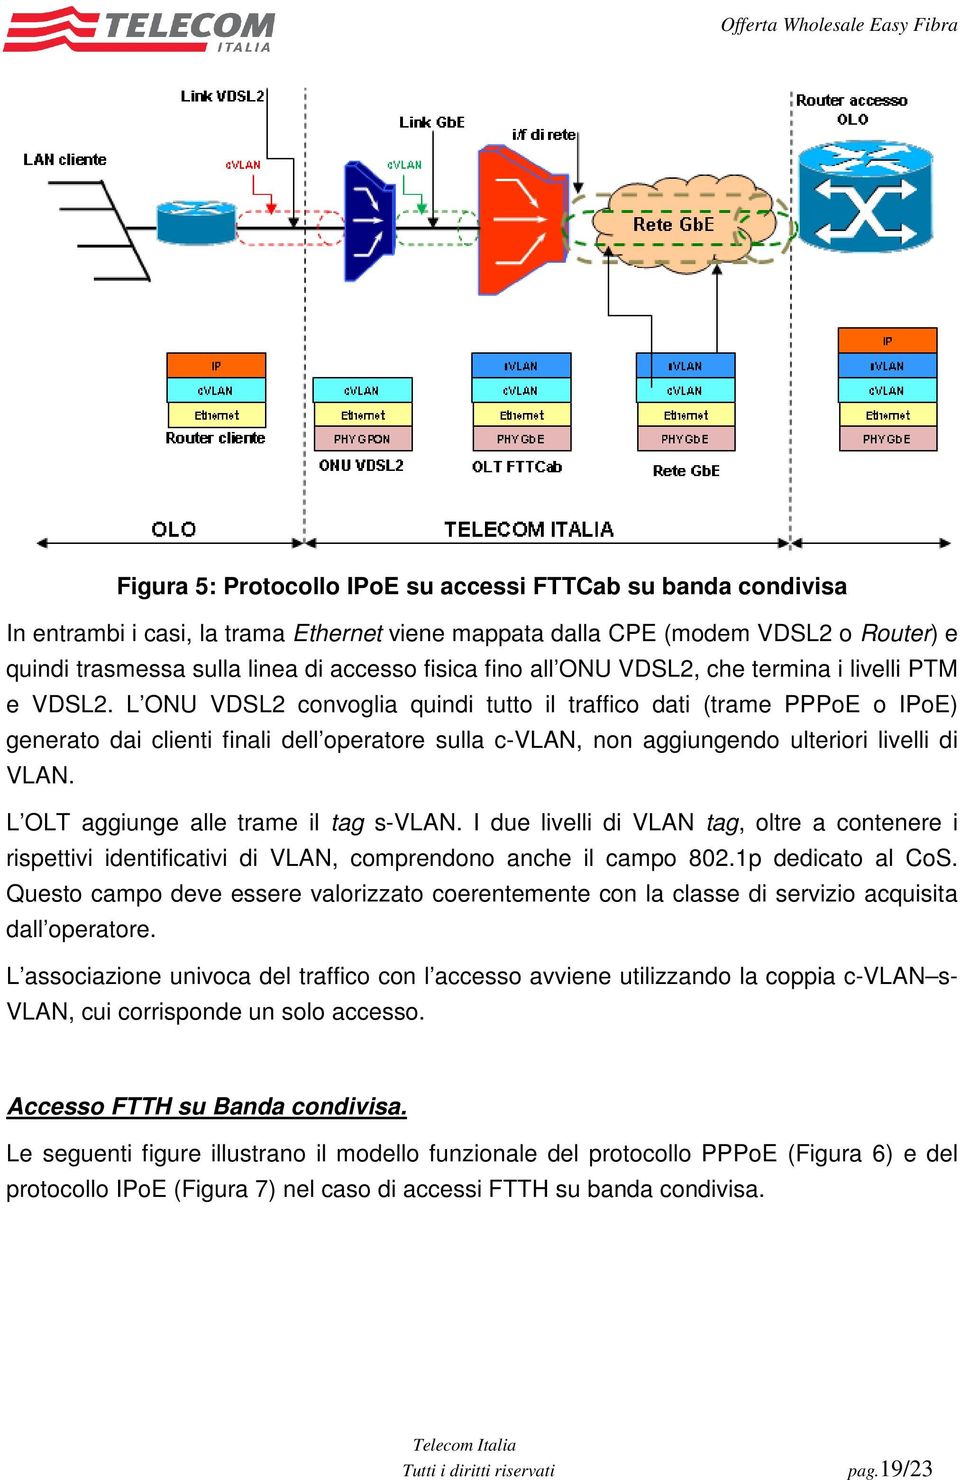 L ONU VDSL2 convoglia quindi tutto il traffico dati (trame PPPoE o IPoE) generato dai clienti finali dell operatore sulla c-vlan, non aggiungendo ulteriori livelli di VLAN.